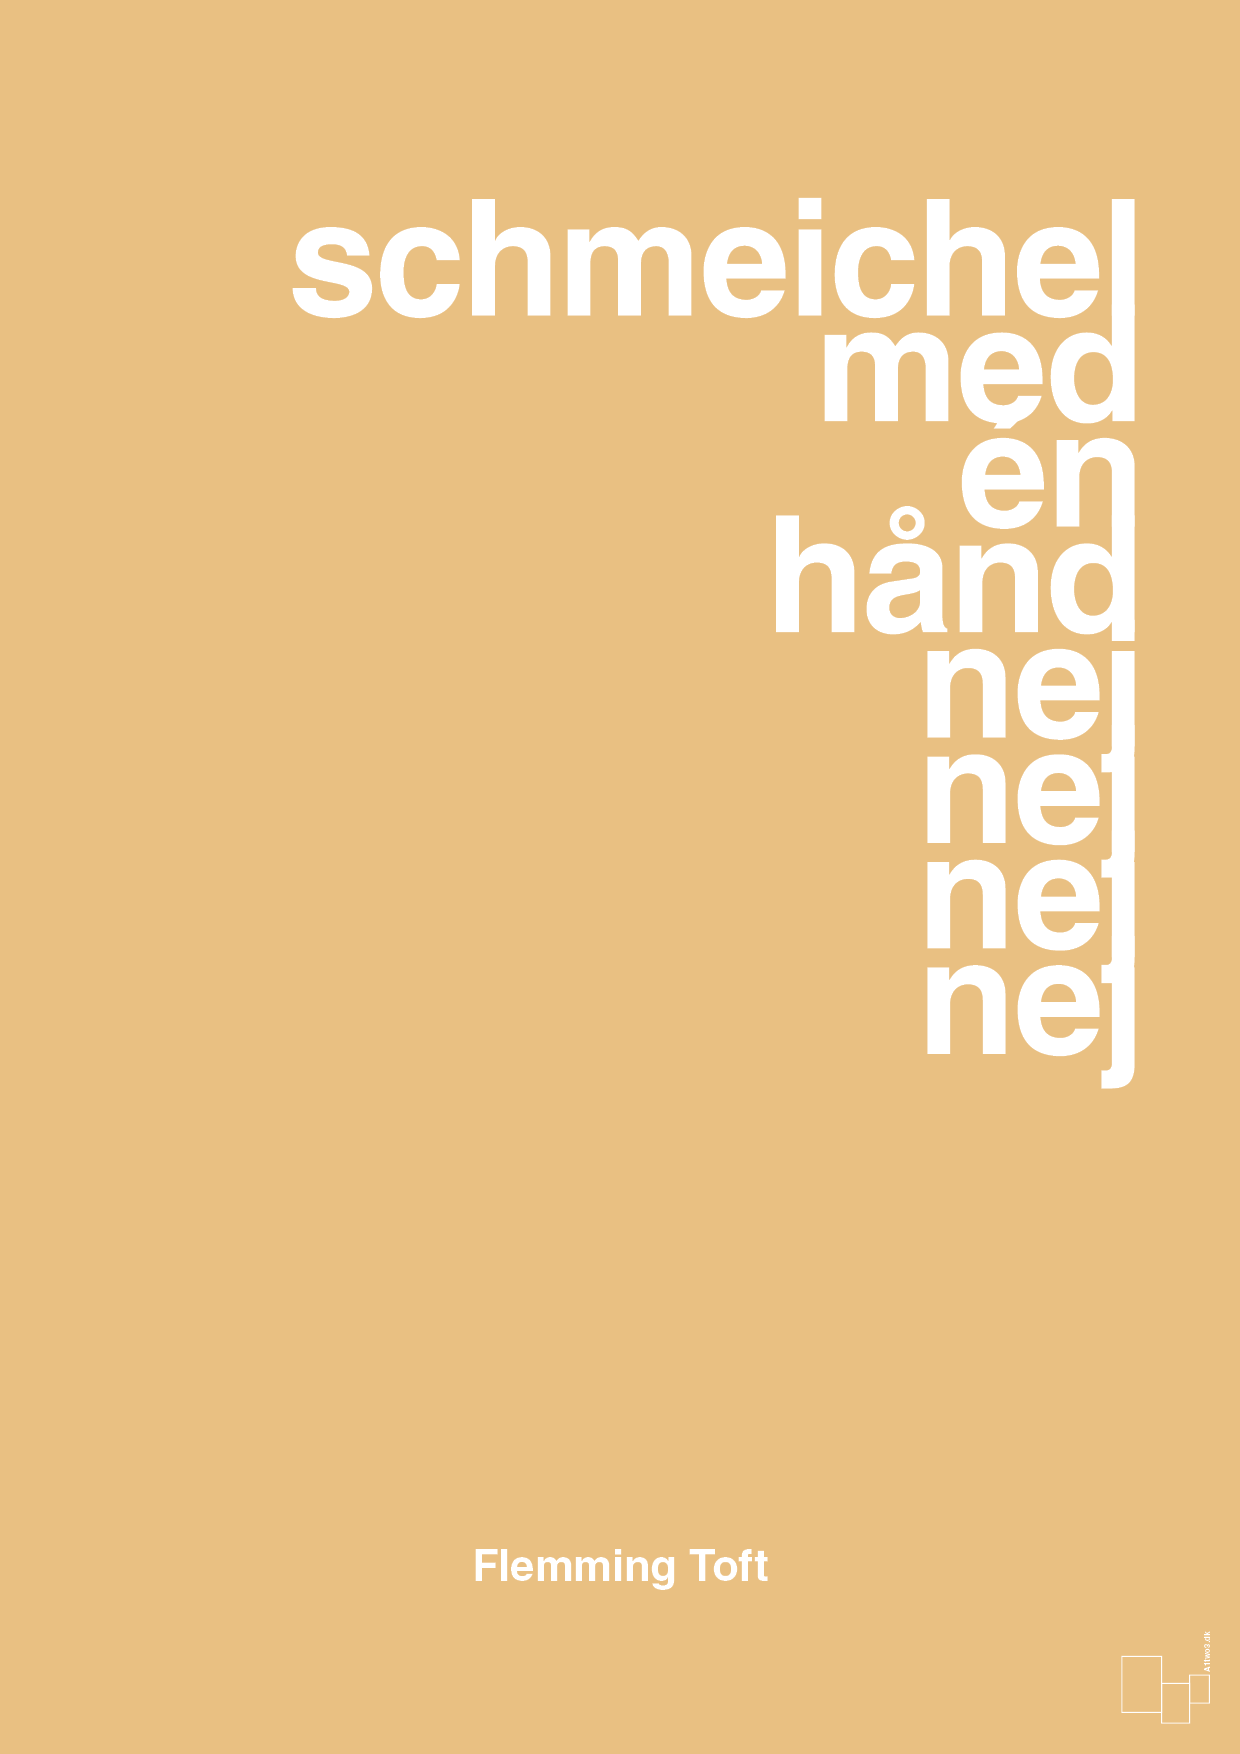 schmeichel med én hånd nej nej nej nej - Plakat med Citater i Charismatic